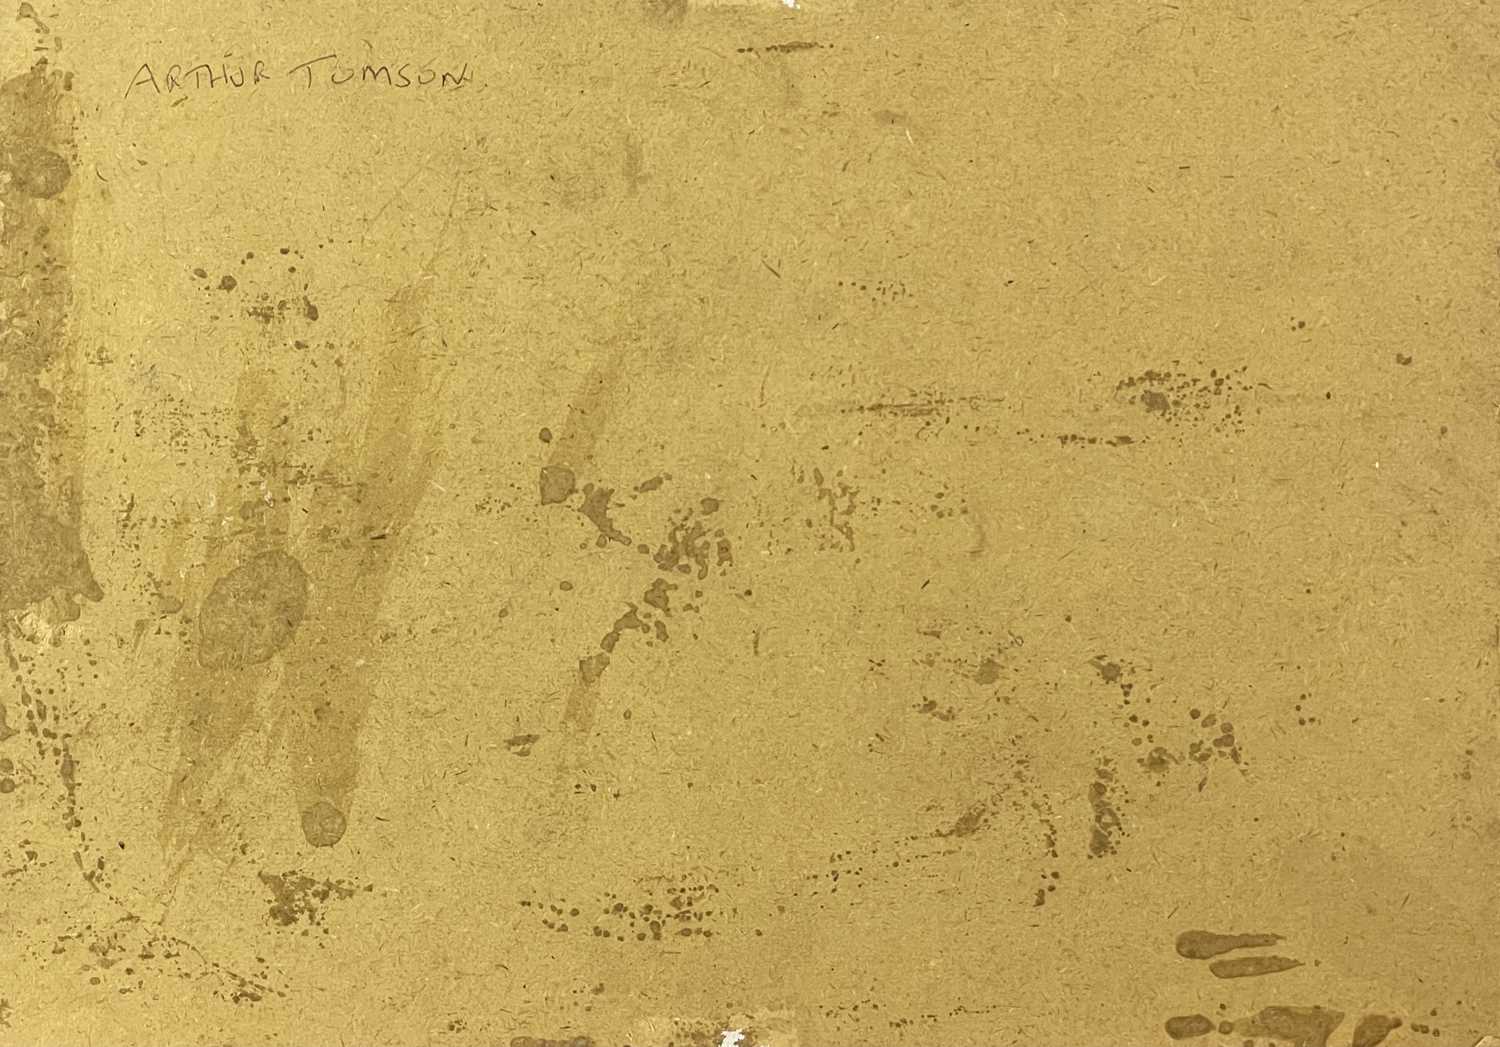 Arthur TOMSON (1858-1905)Horses in a Moonlit Landscape Oil on board Signed 25 x 35cm - Image 2 of 2